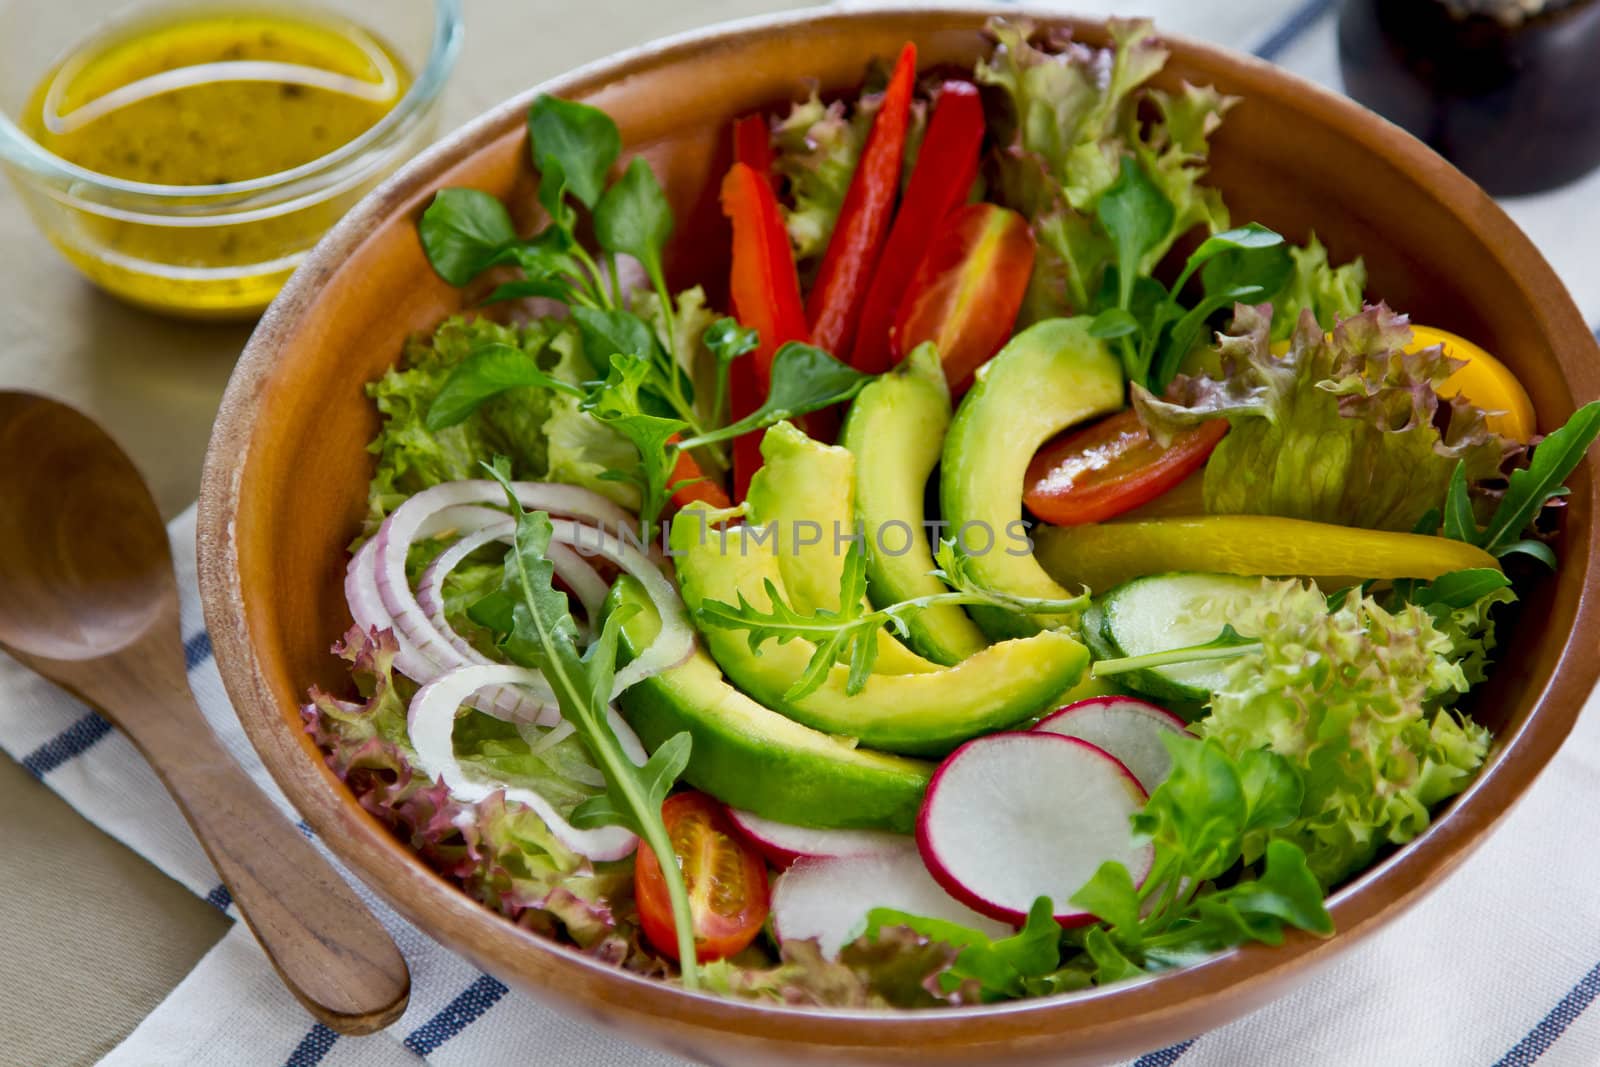 Avocado salad by vanillaechoes